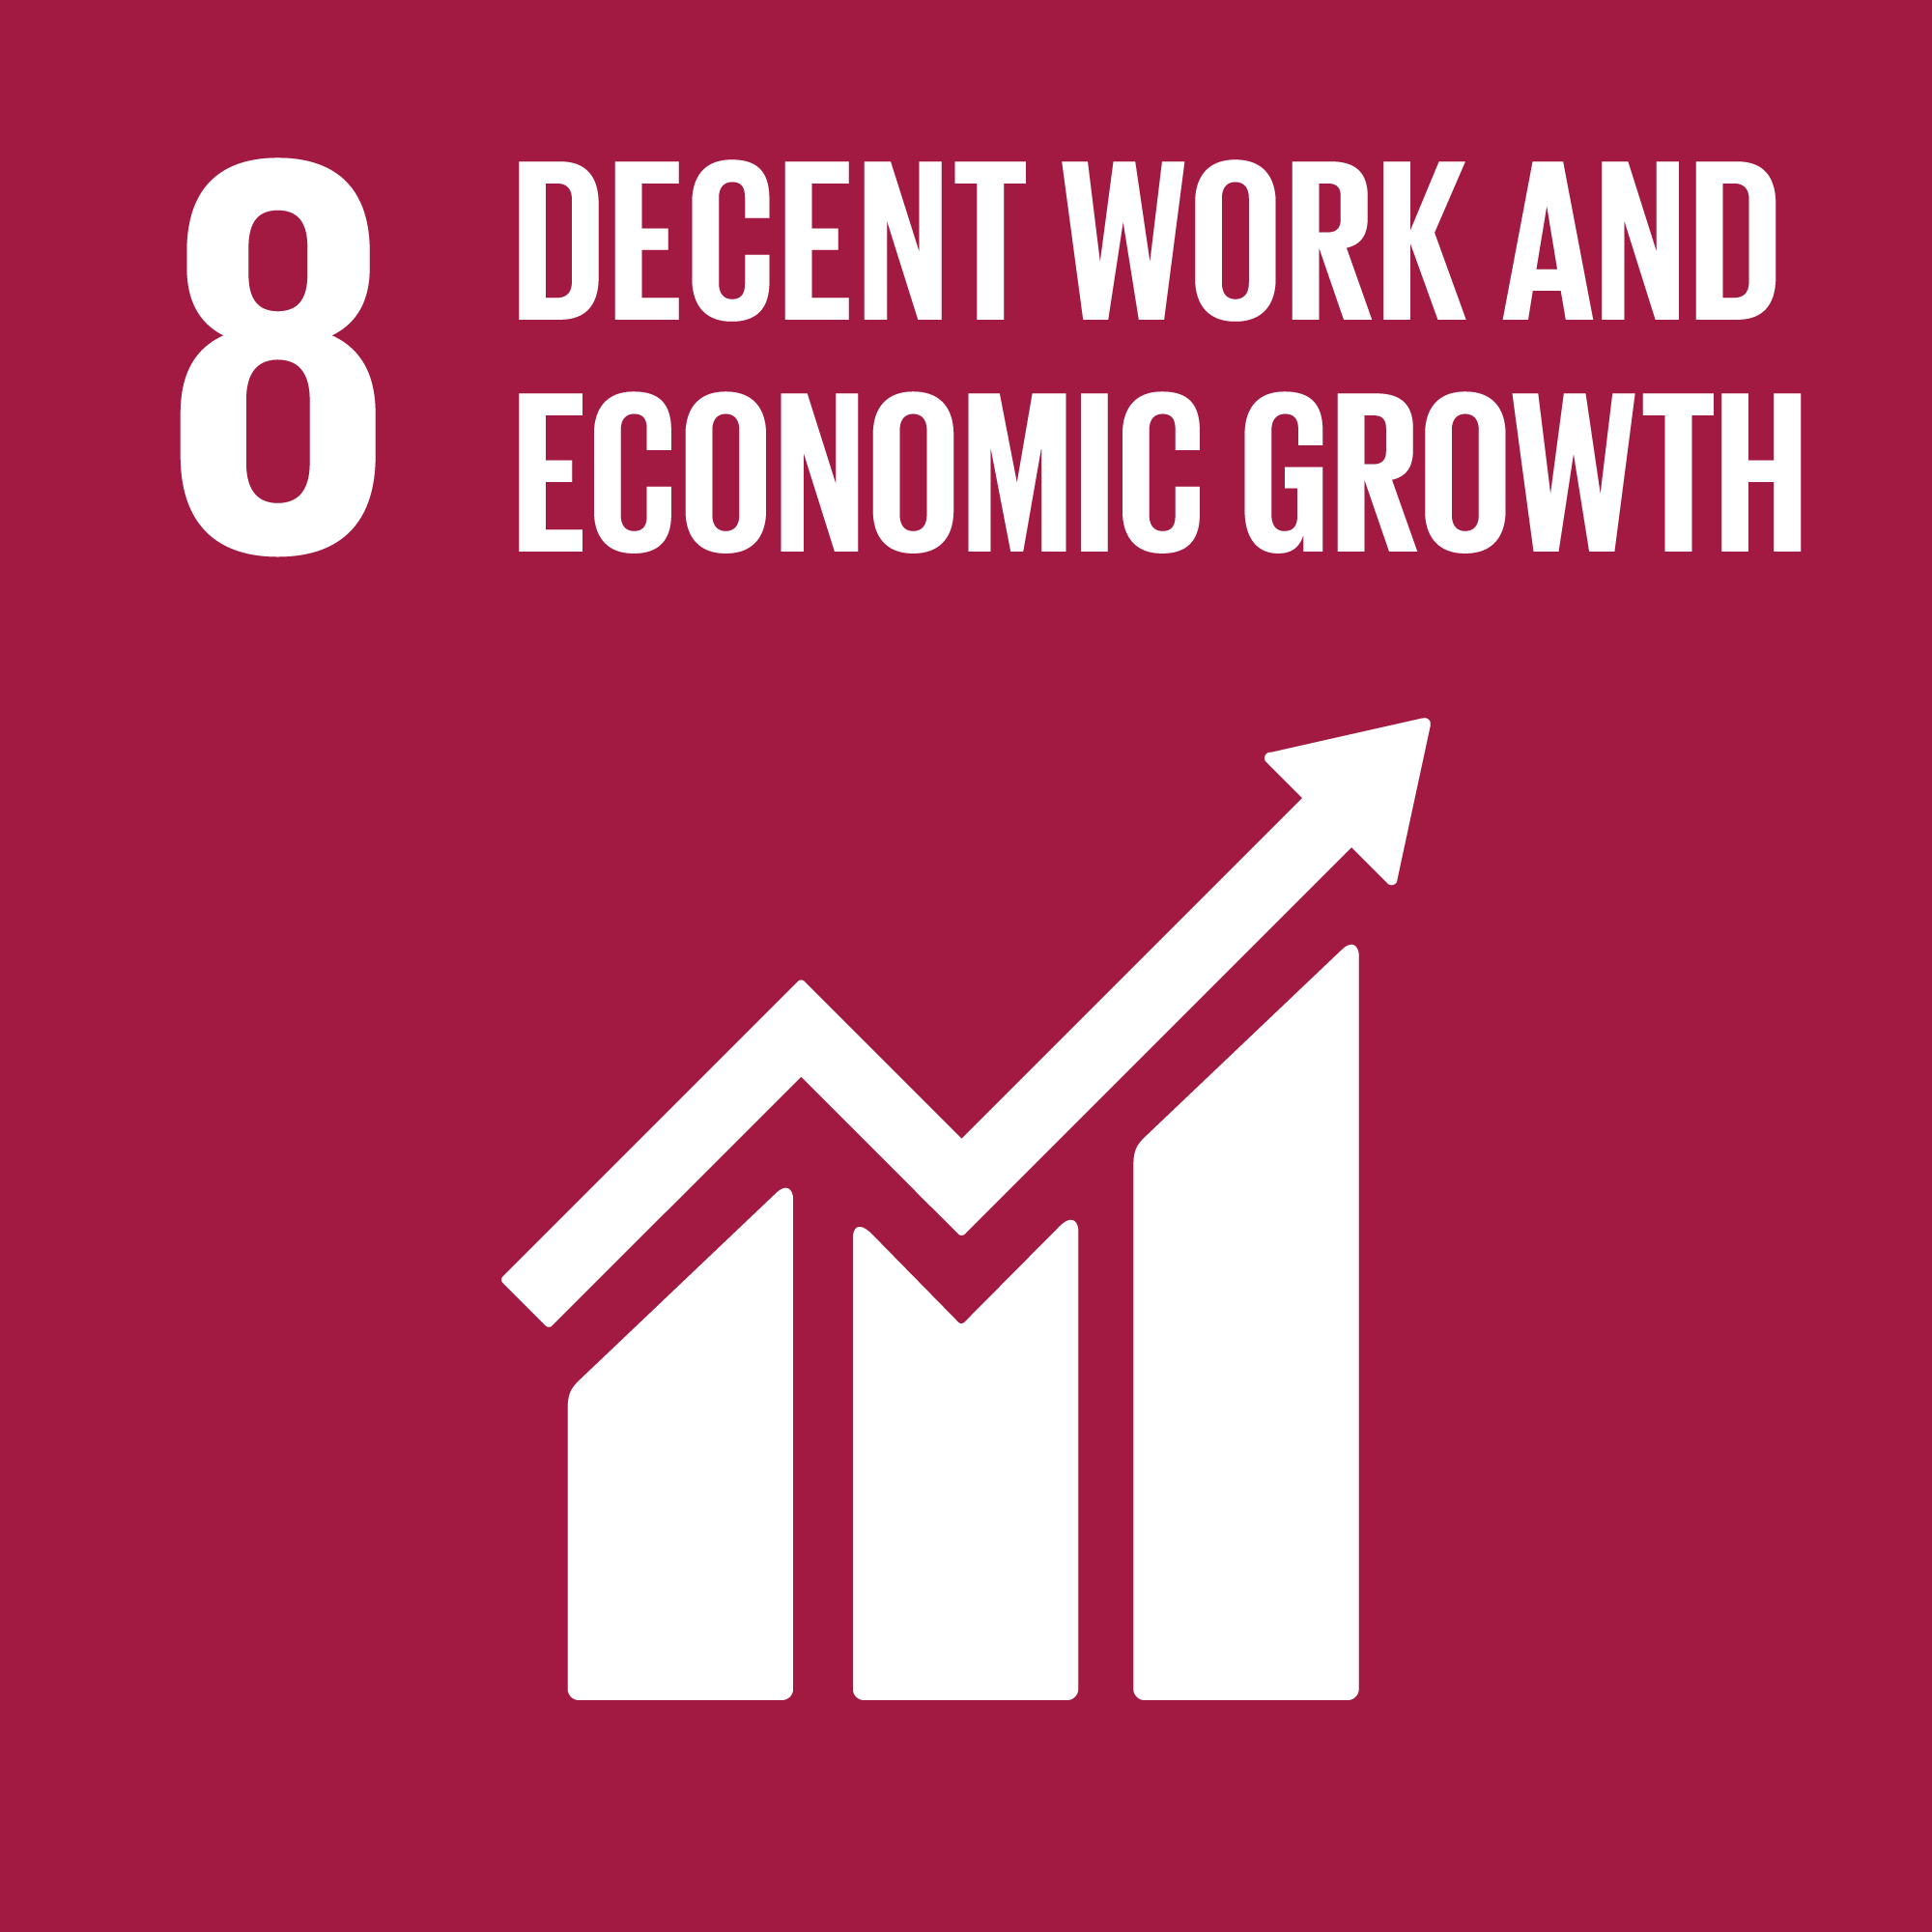 # 8 Lavoro dignitoso e crescita economica